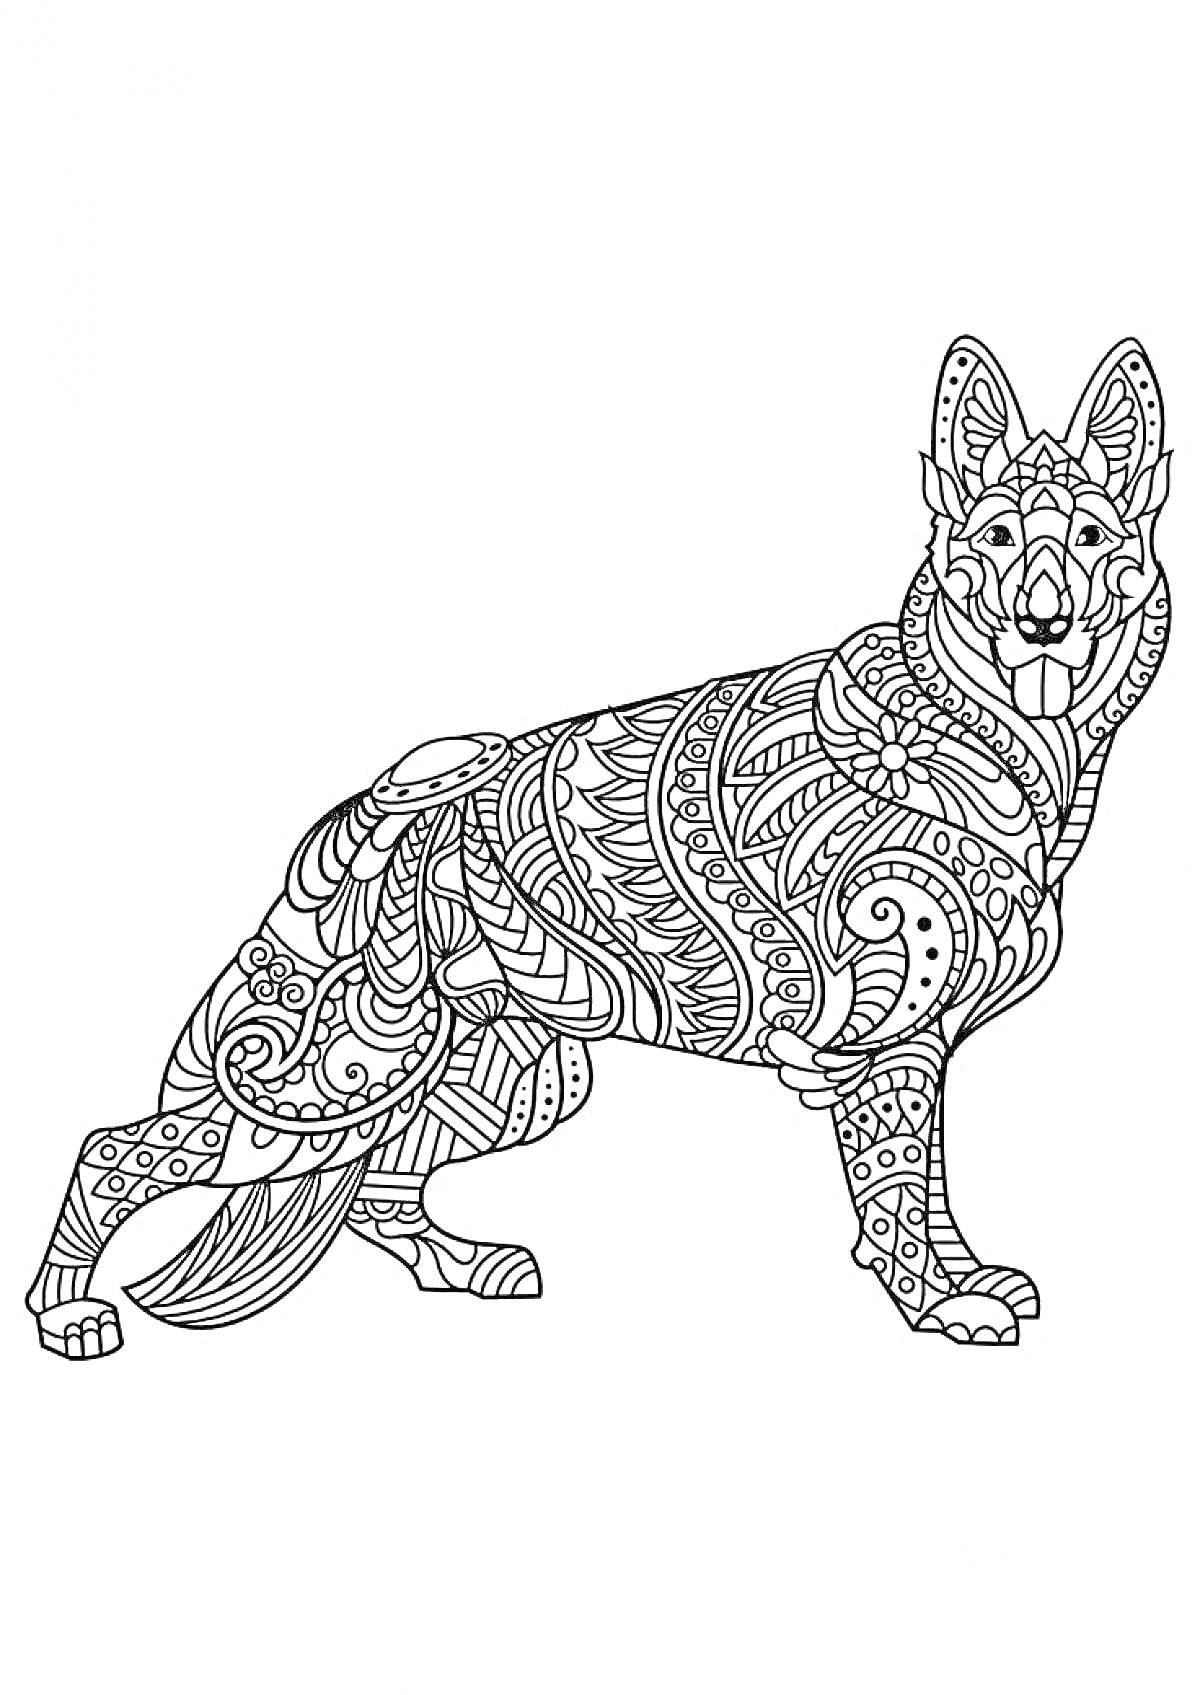 Антистресс раскраска с собакой, стоящей на четырех лапах, украшенной зентангл-узорами, включая линии, завитки и геометрические фигуры